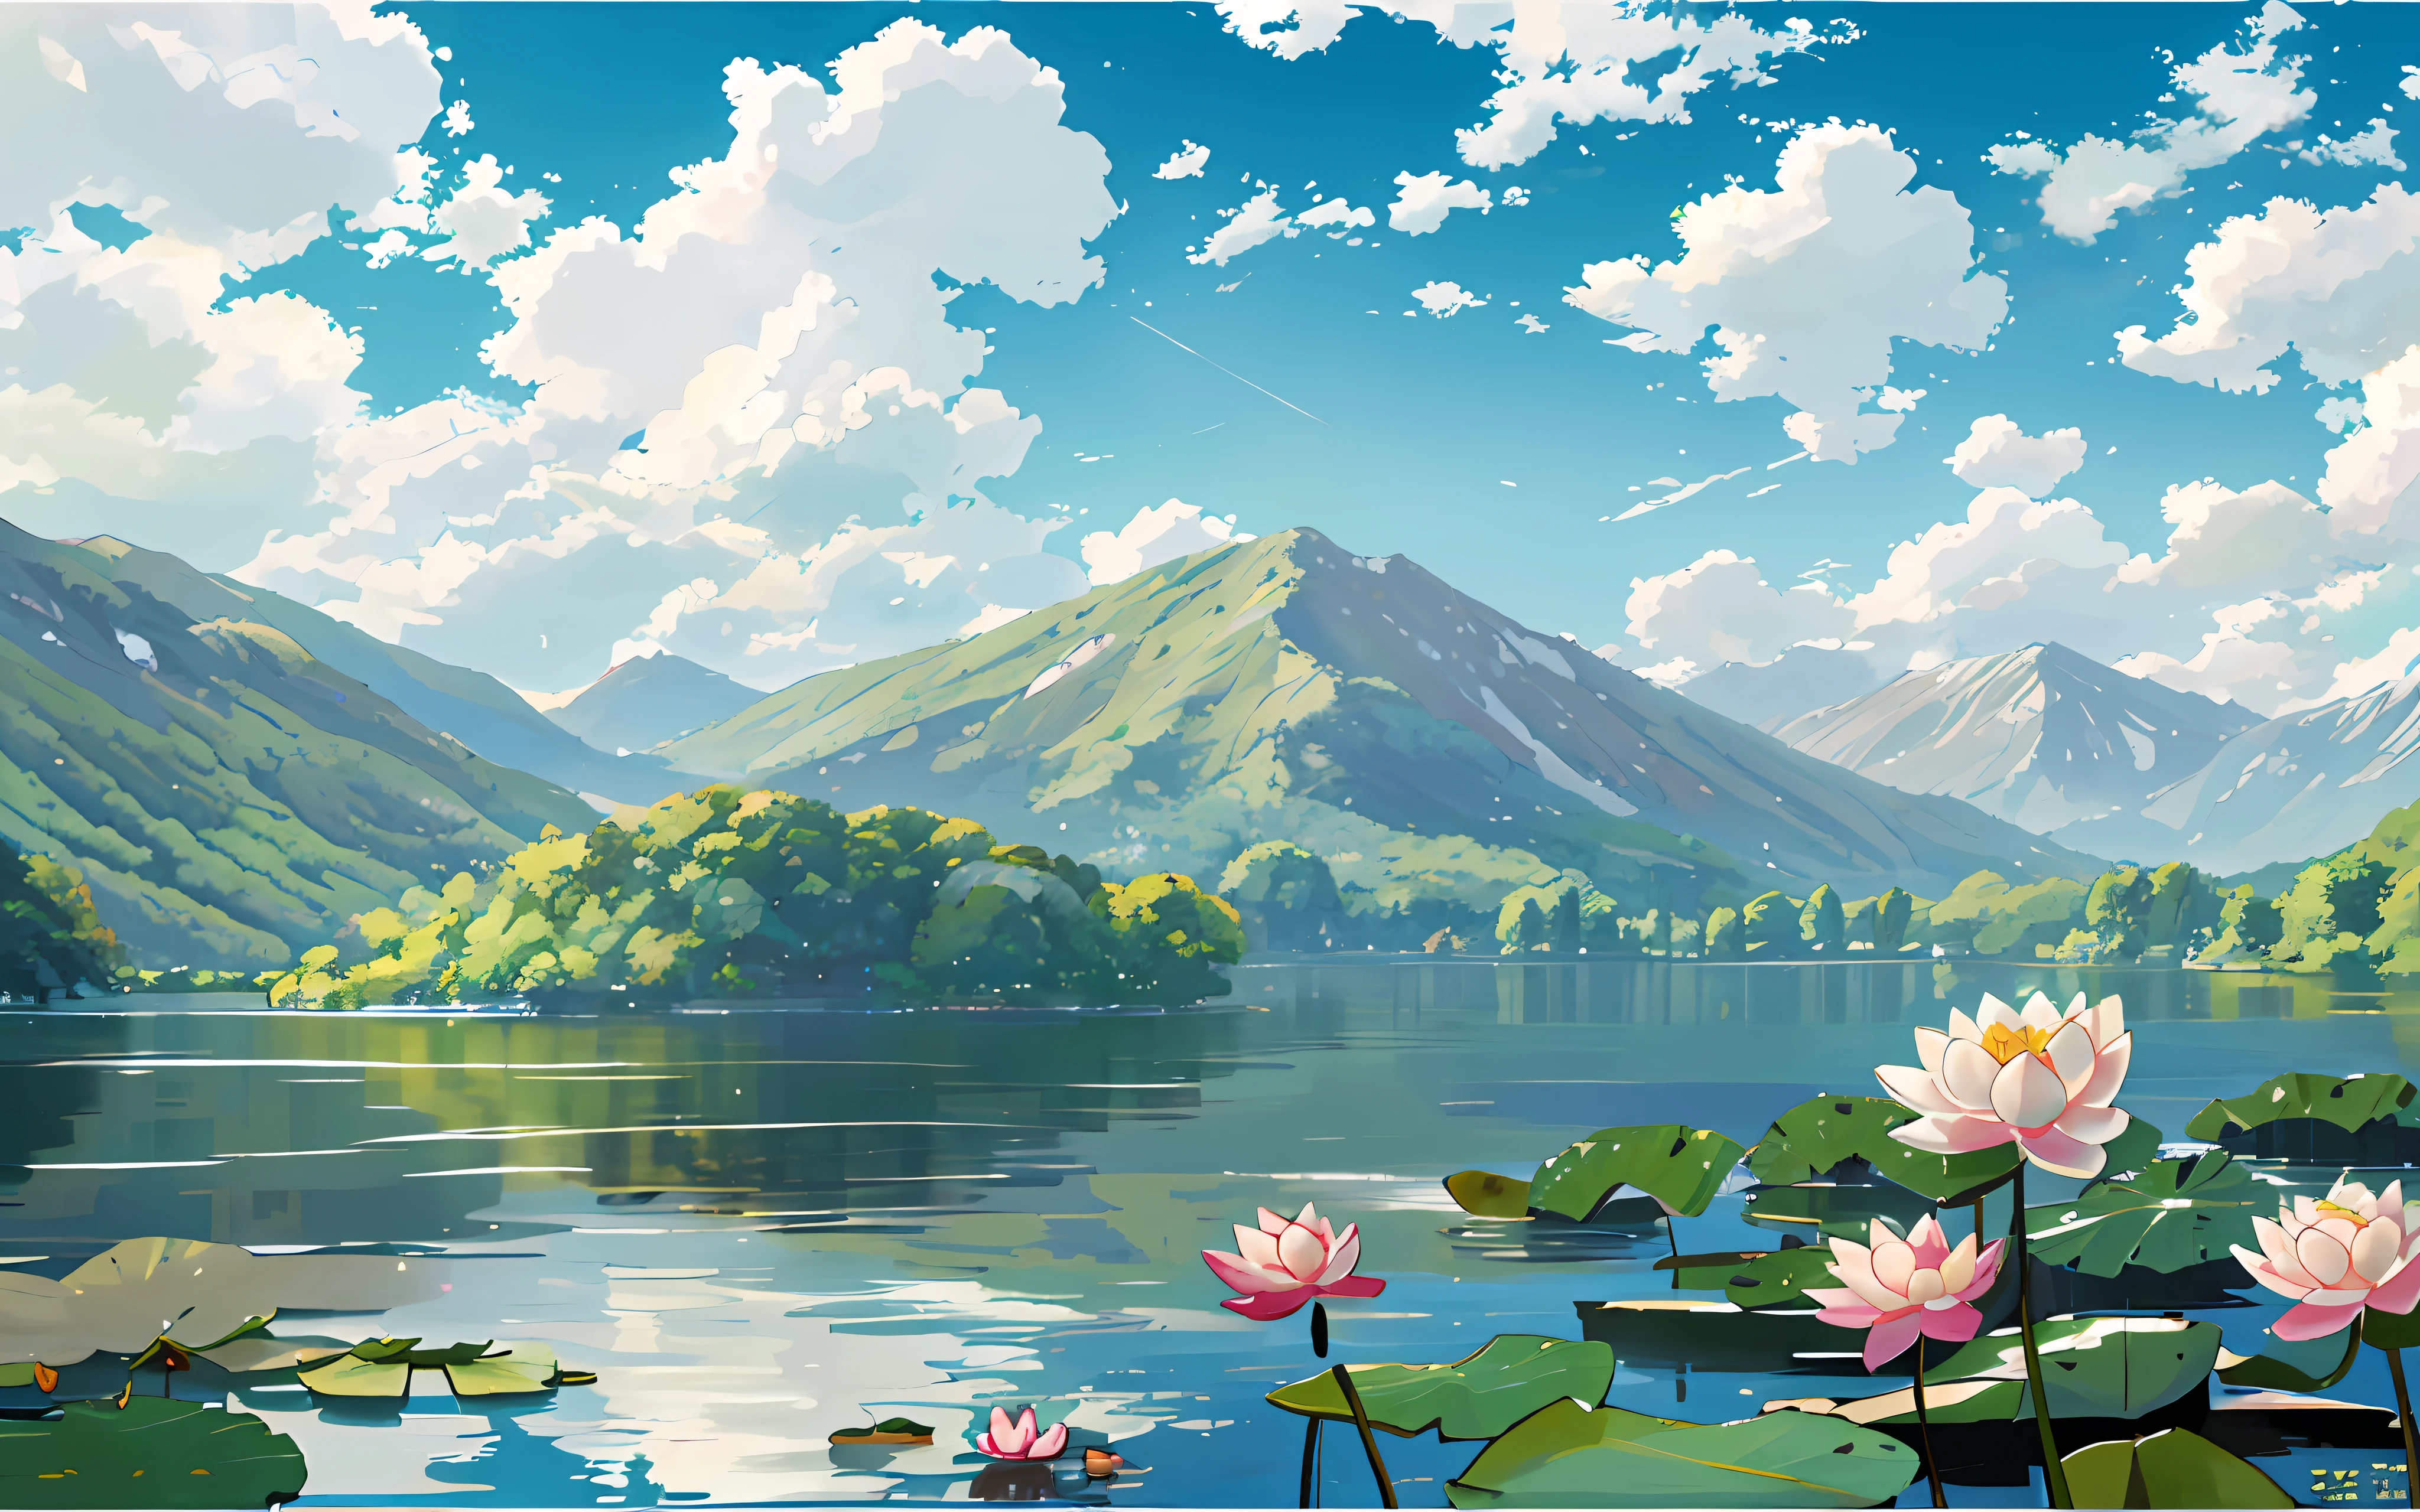 Em primeiro plano está um lago, existe um [branco] nenúfar e folha de lótus no lago, Montanhas verdes, blue sky and branco clouds, estilo jipe , bidimensional, Celulóide, ilustração, paisagem natural, vento, verão, Tons brilhantes, luz solar